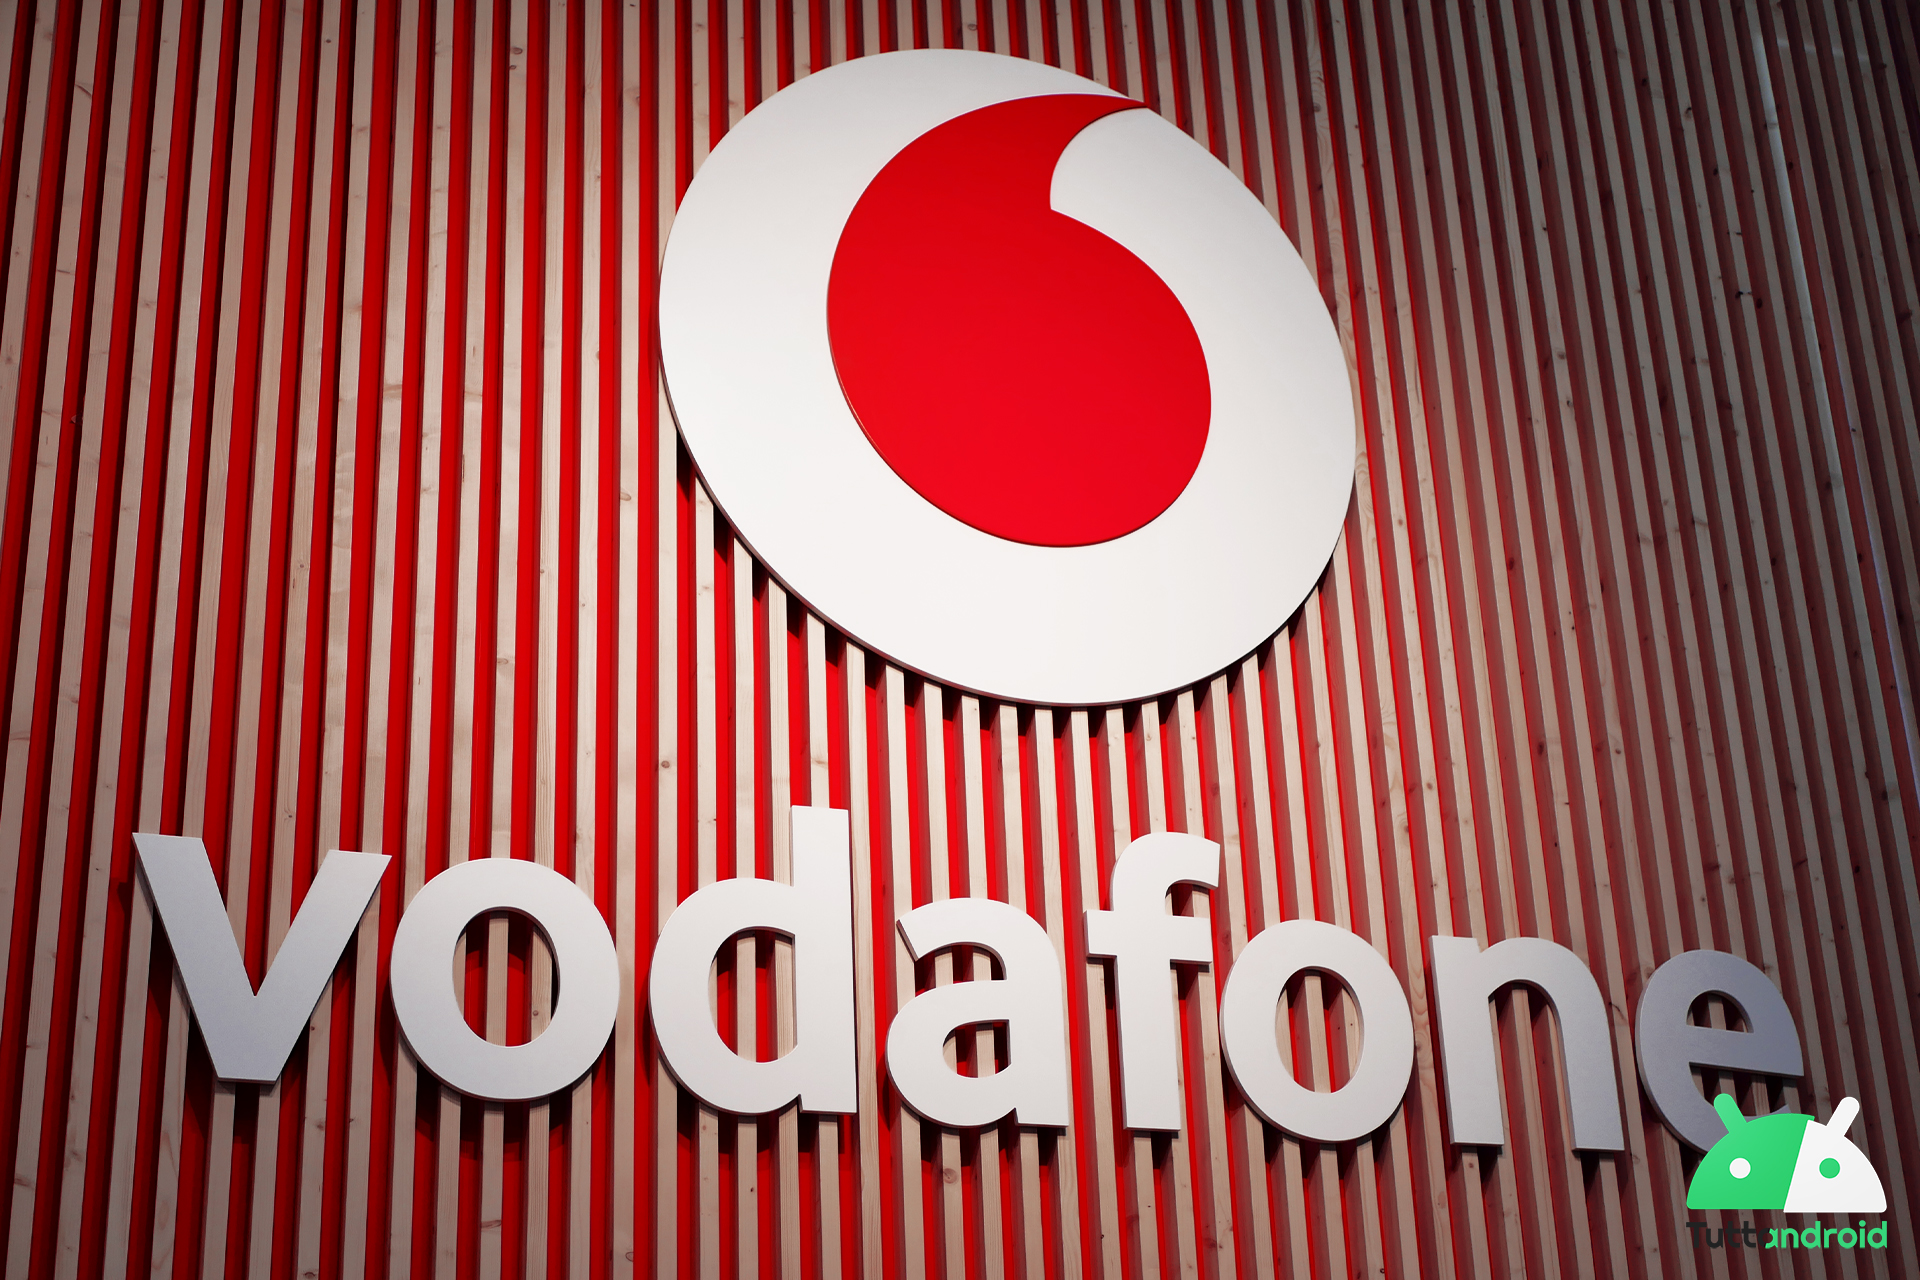 Vodafone regala Buono Regalo .it di 50 euro attivando una